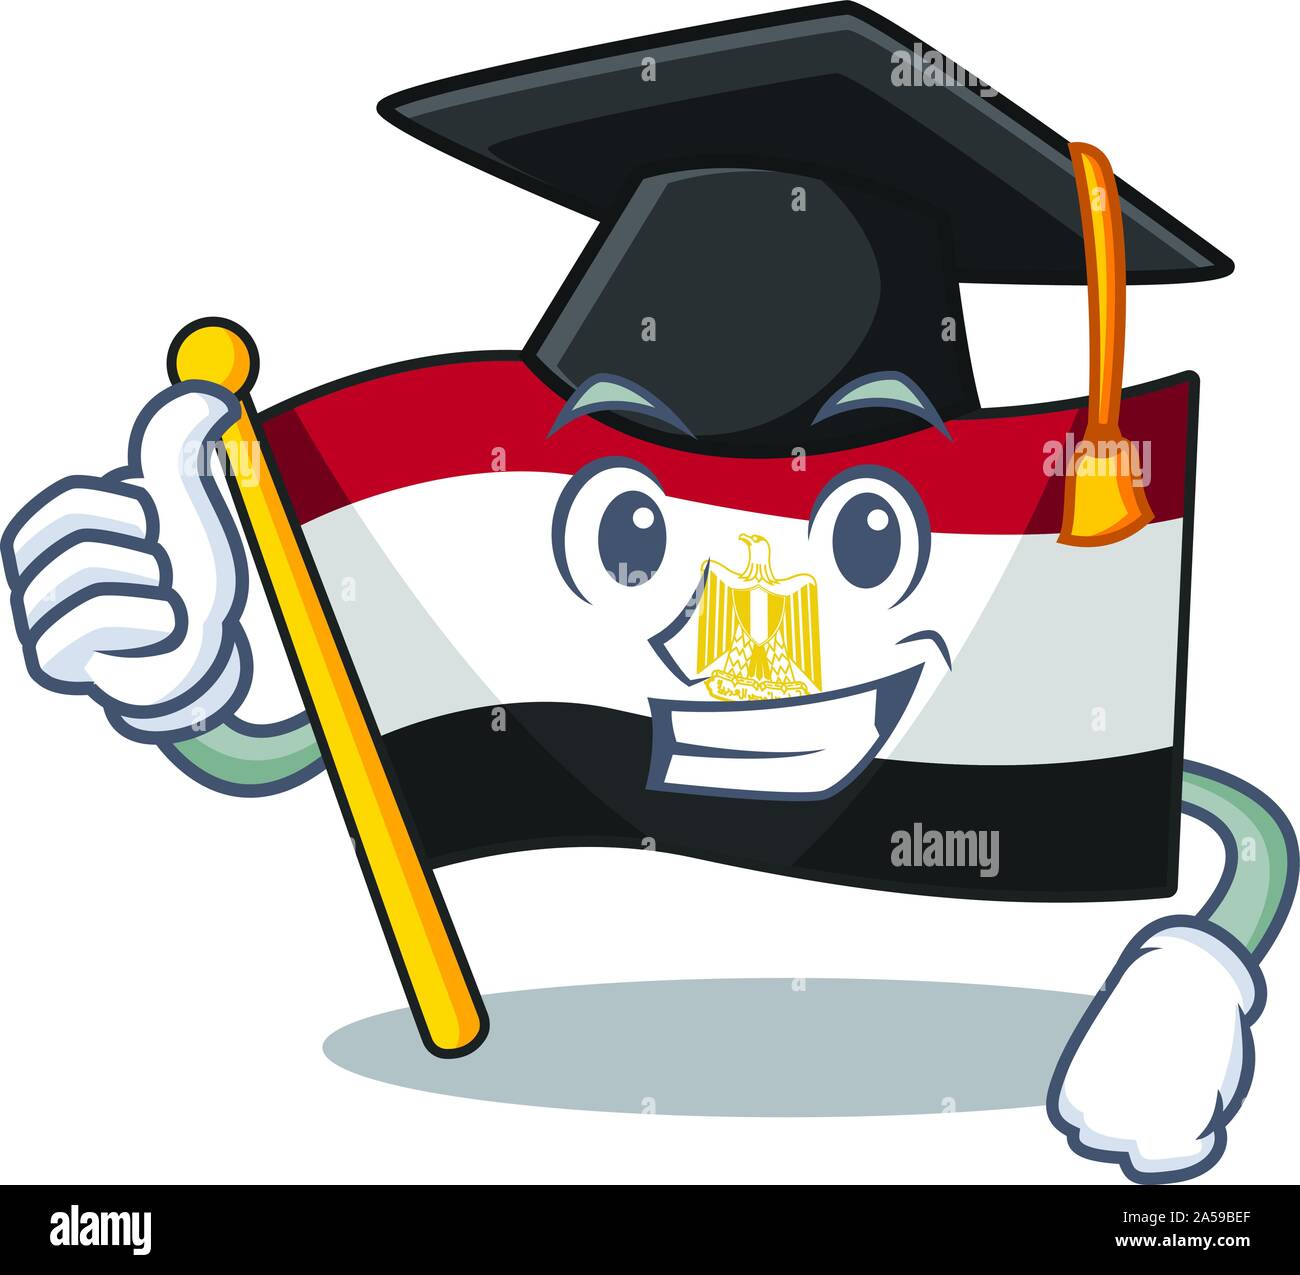 Graduation flag egyptian flown on cartoon pole Stock Vector